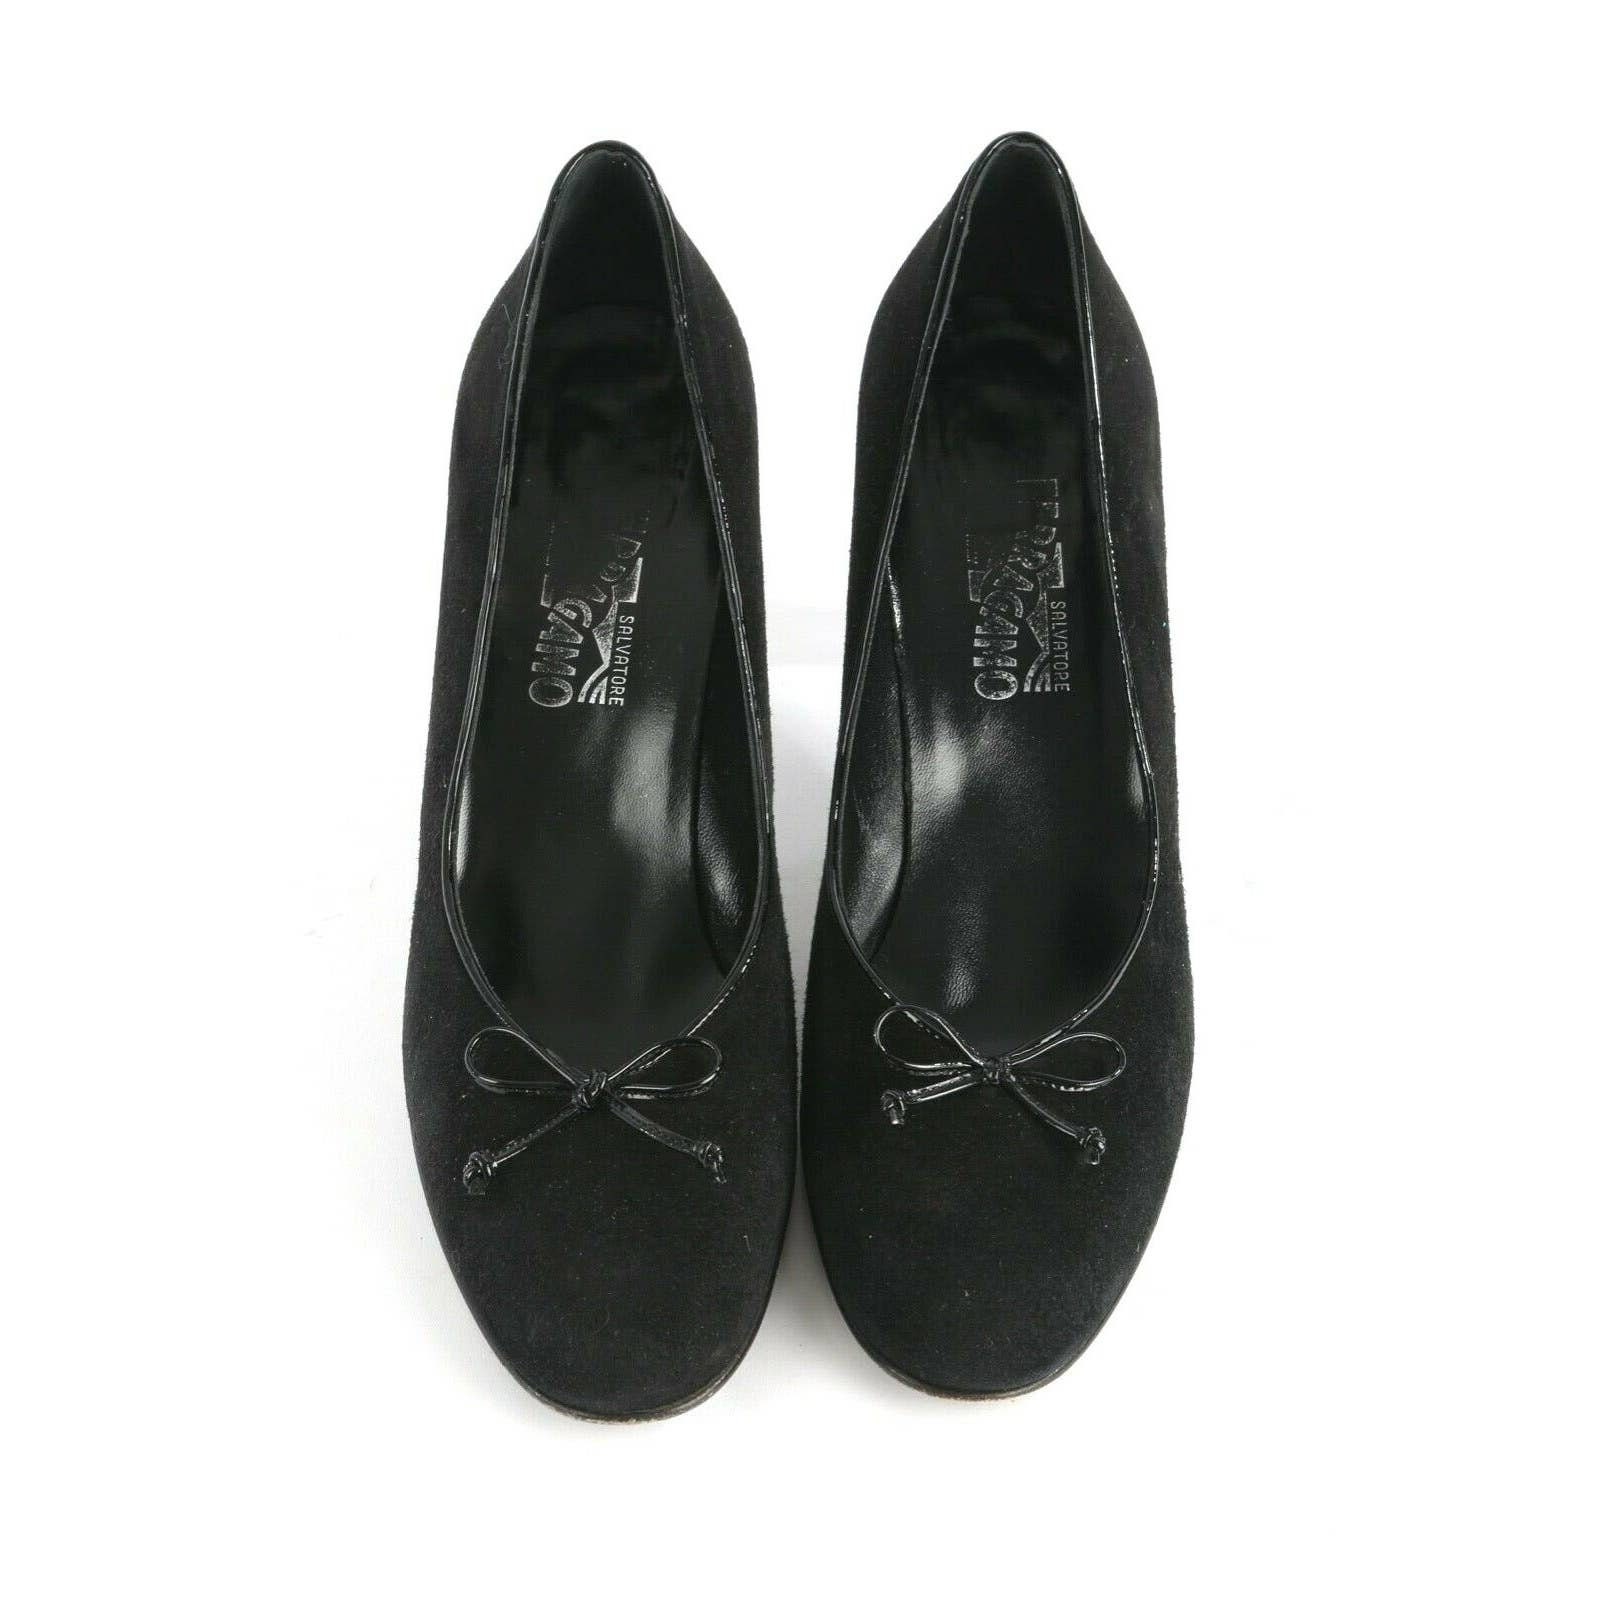 Vintage SALVATORE FERRAGAMO Black Suede Bow Heels Pumps Size | Etsy